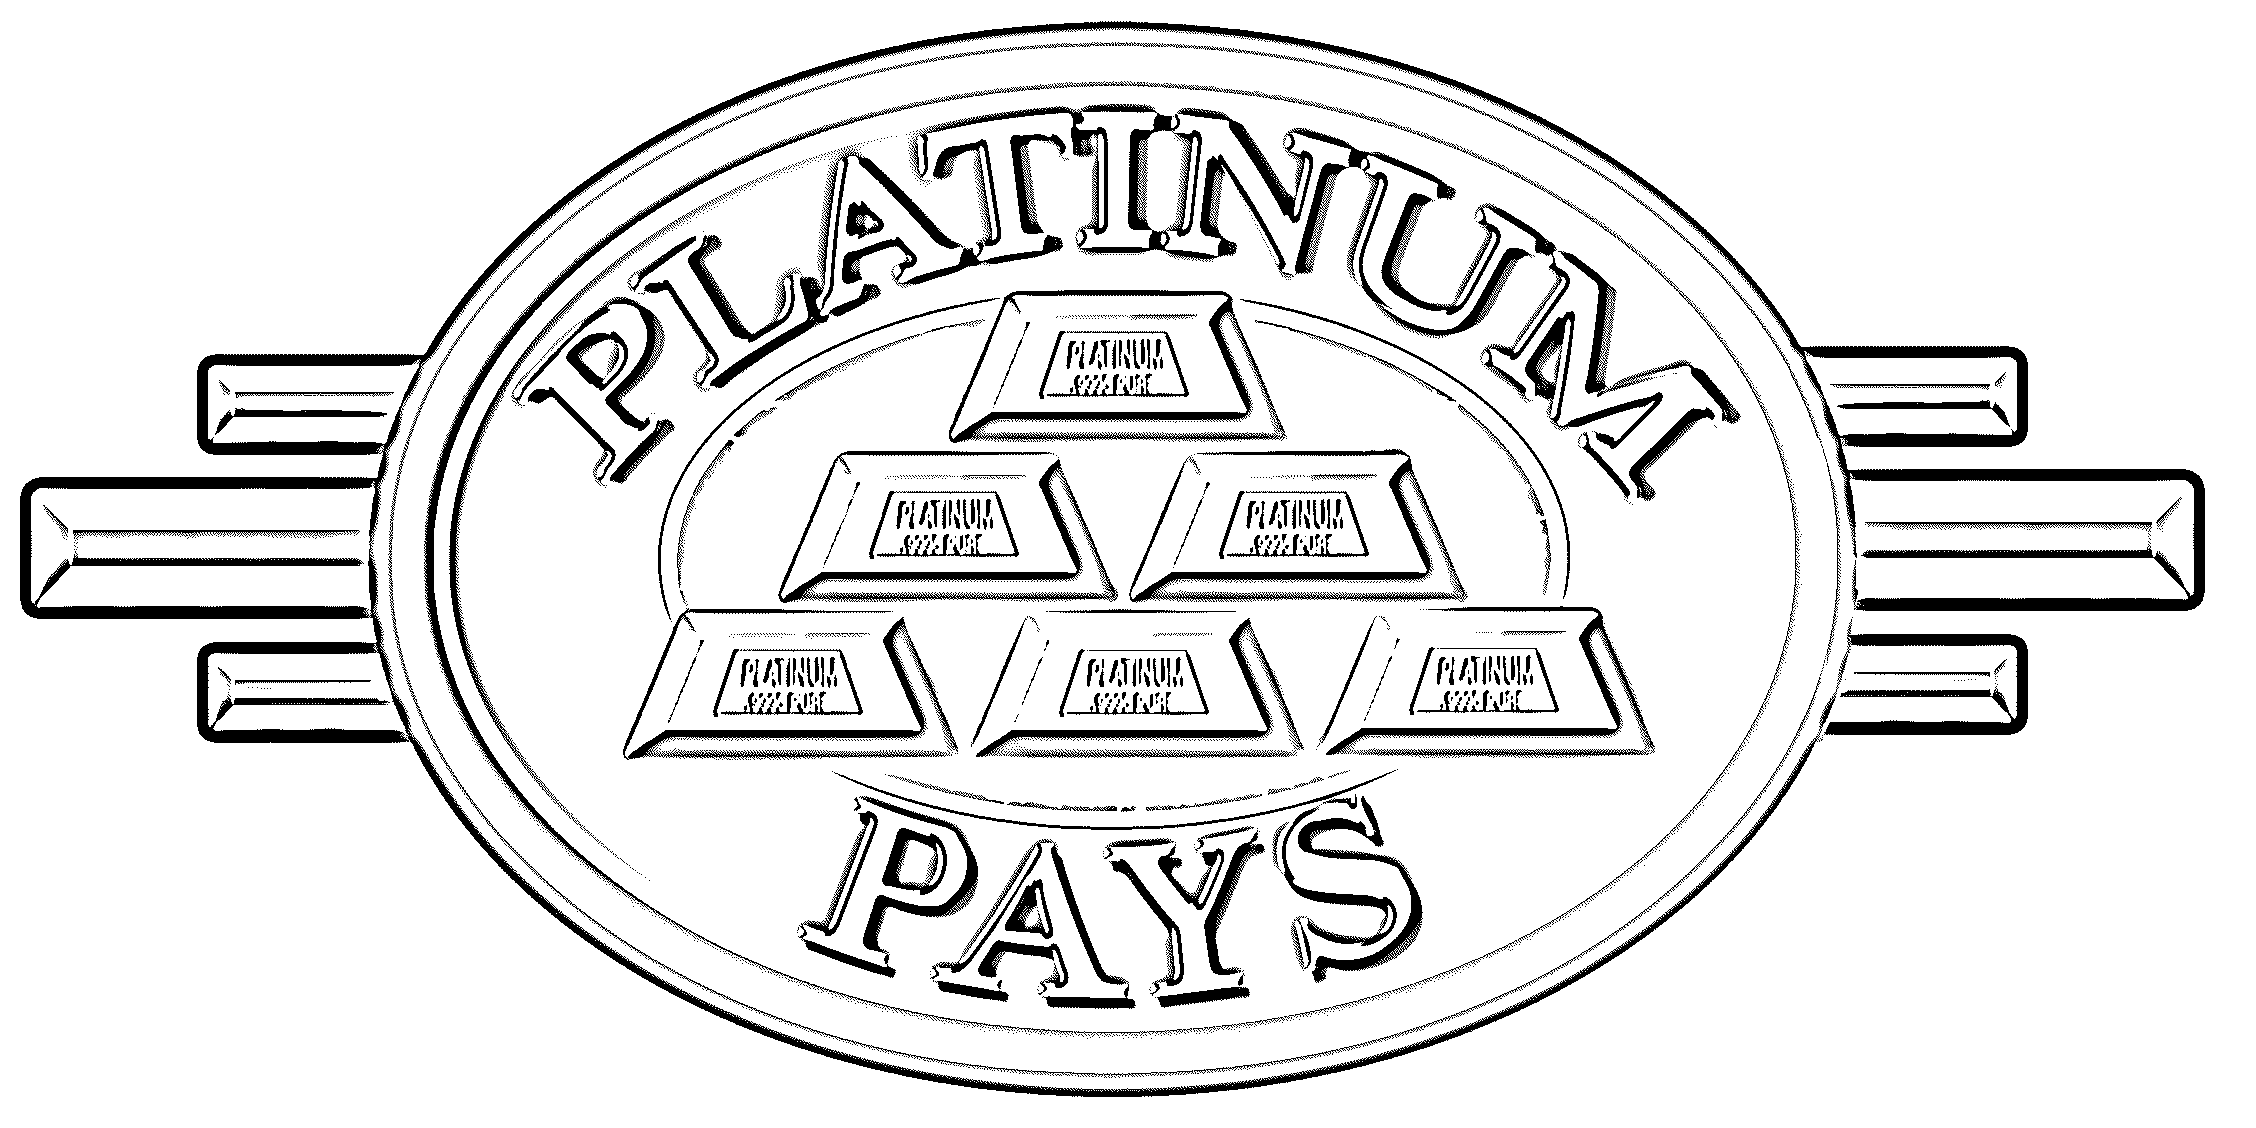  PLATINUM PAYS